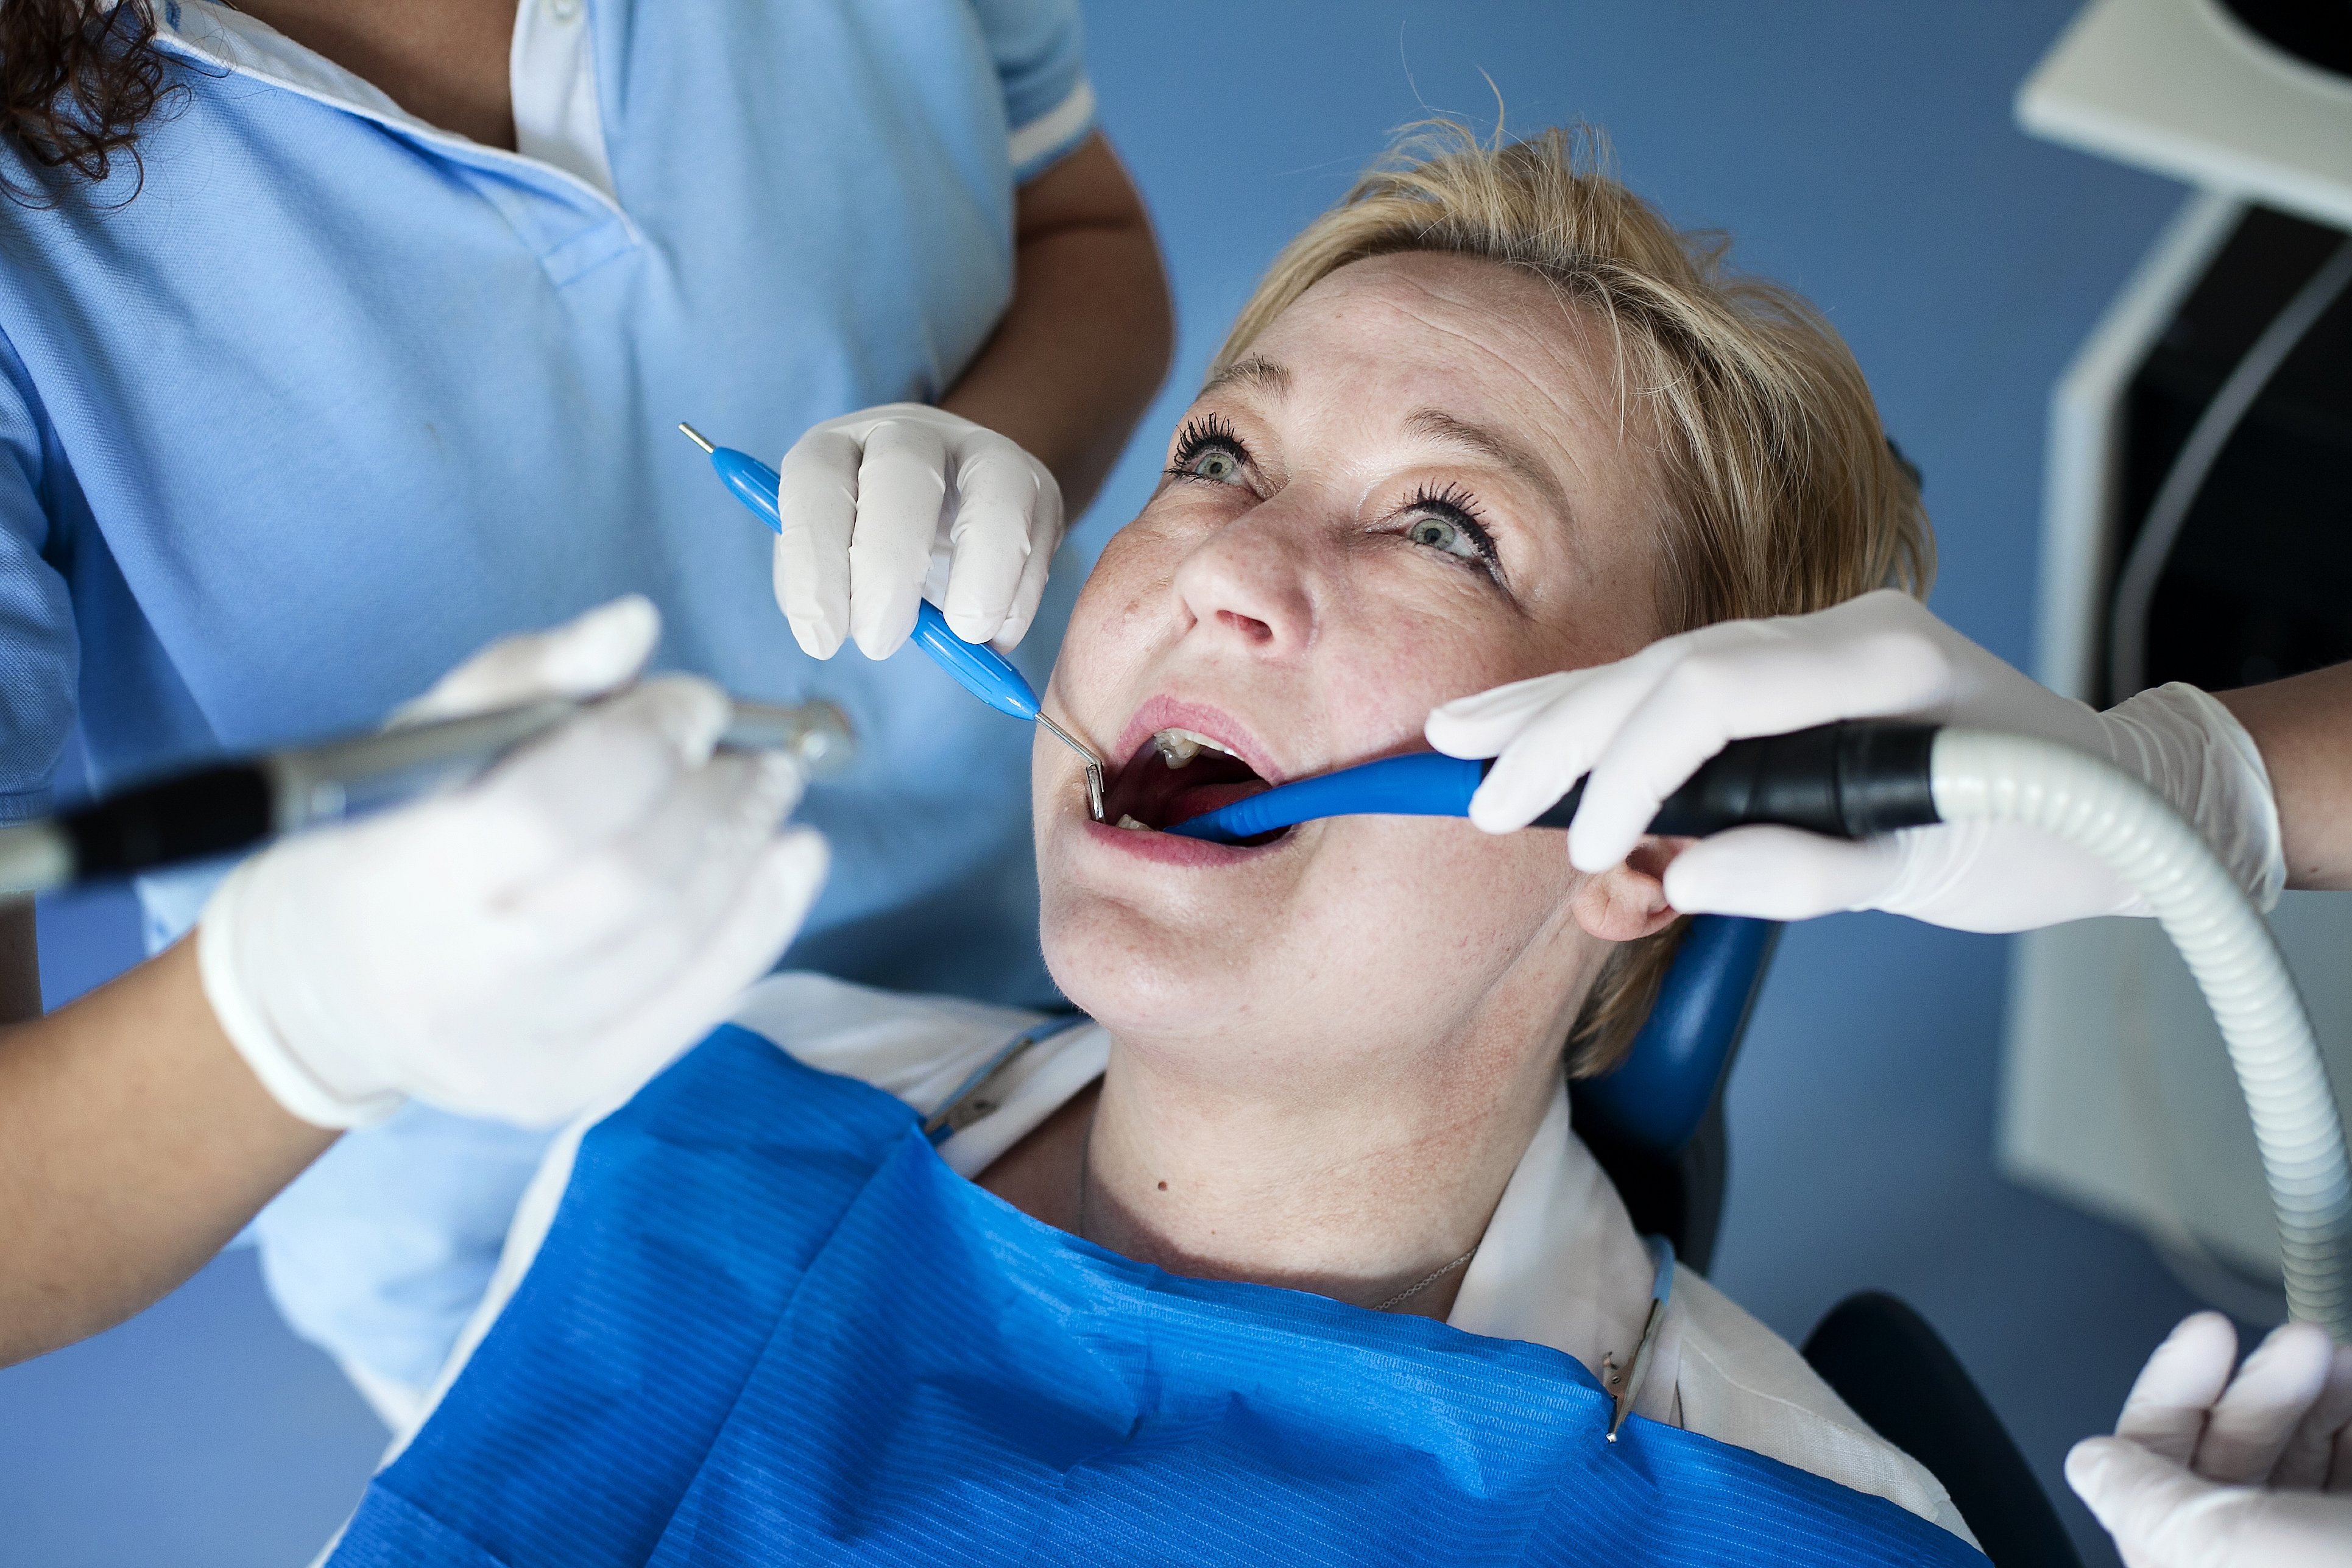 Tandlæger i oprør ny særlov: - Det er fuldstændig ude i hampen | TV MIDTVEST